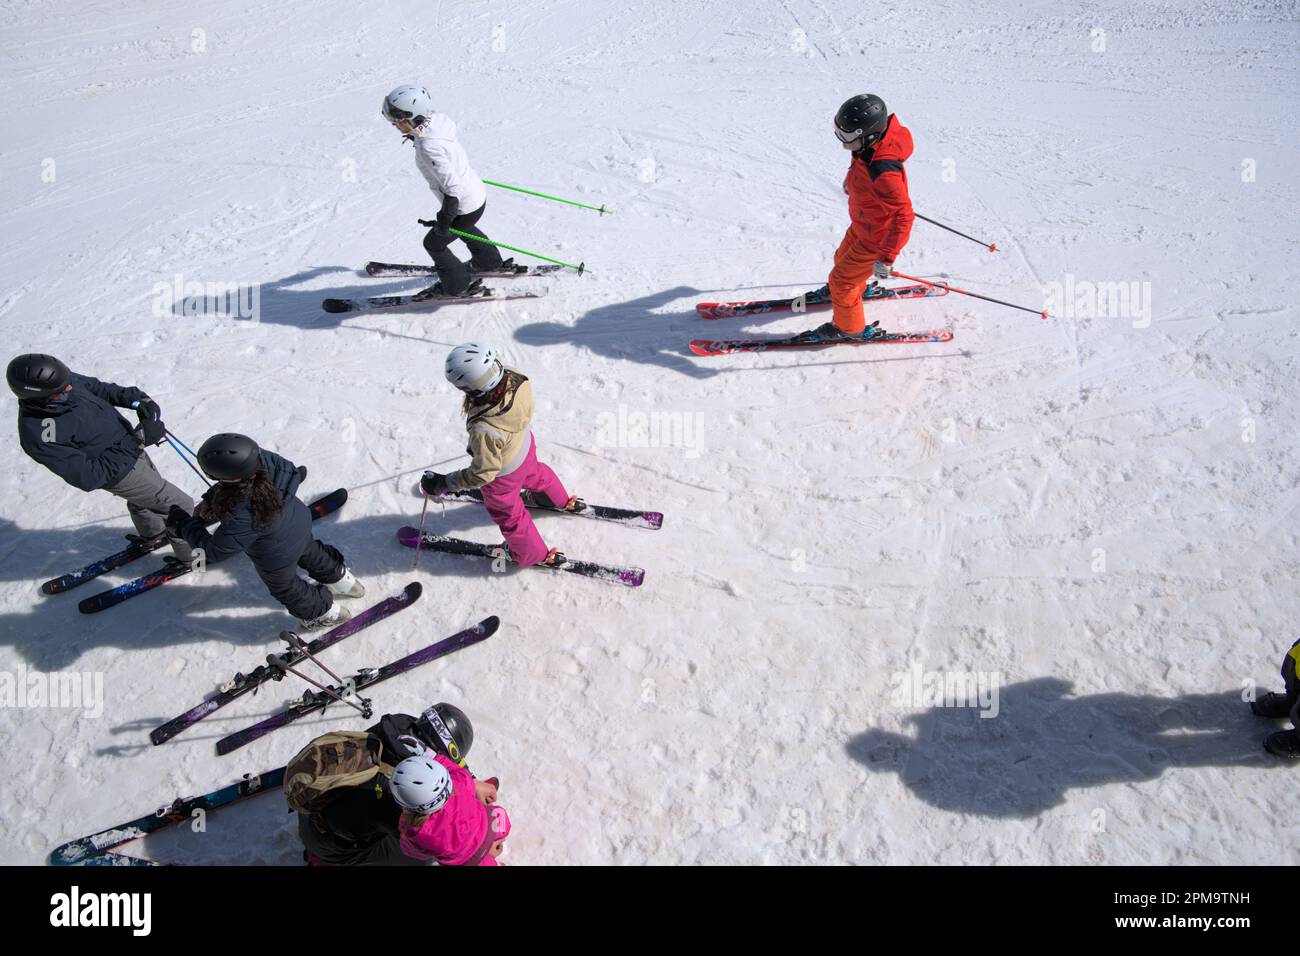 Groupe d'amis se préparer à descendre aux Diablerets dans les Alpes suisses, en tête de série de skieurs Banque D'Images